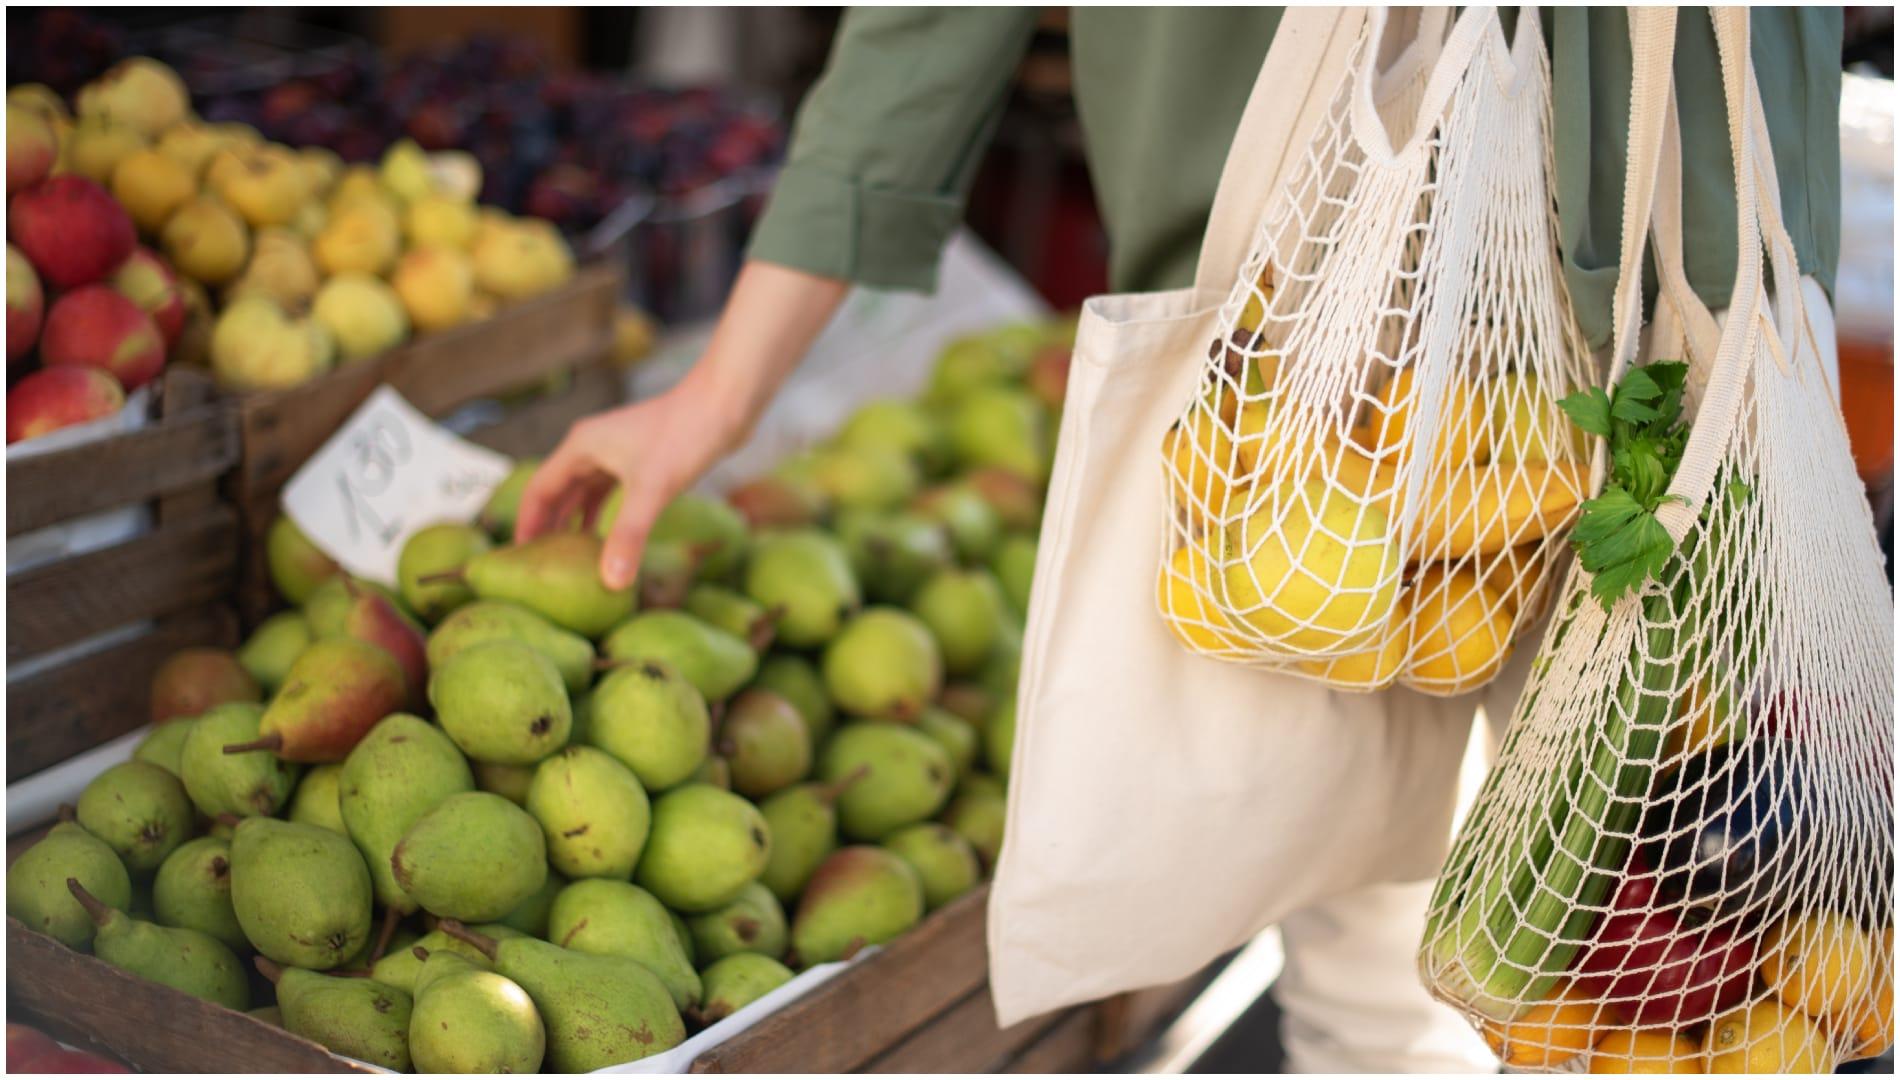 Una mujer realiza la compra en el mercado (Foto: Shutterstock)